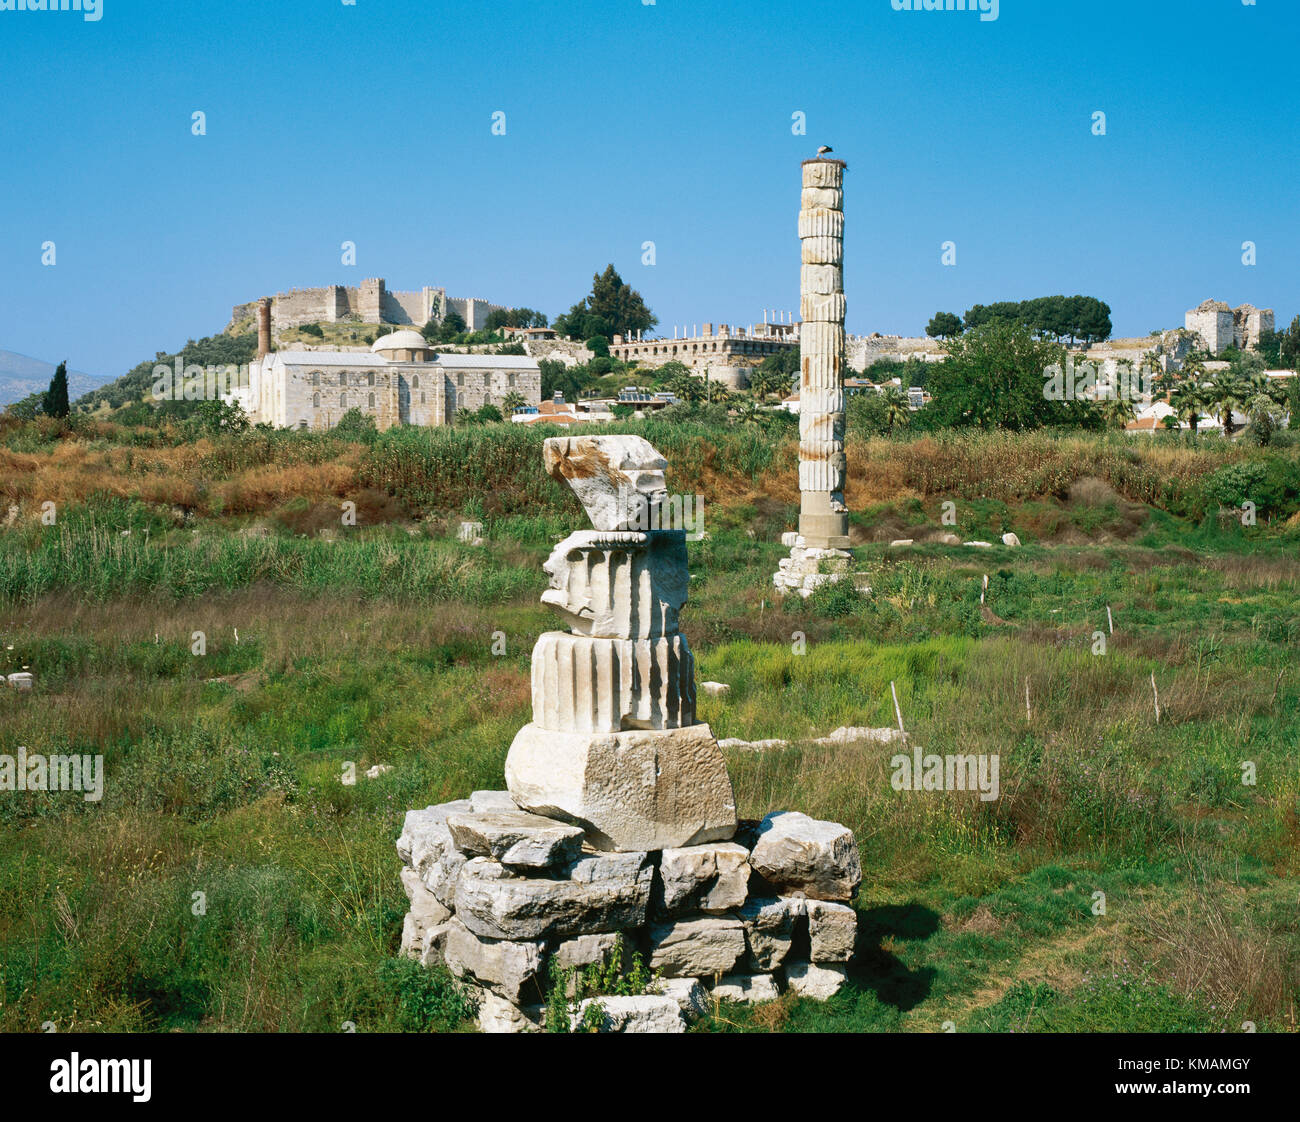 La Turquie, Ephèse (Selcuk moderne). Temple d'Artémis ou Artemision. Temple grec. L'une des 7 merveilles du monde antique. Le côté droit de la maison aujourd'hui. Banque D'Images